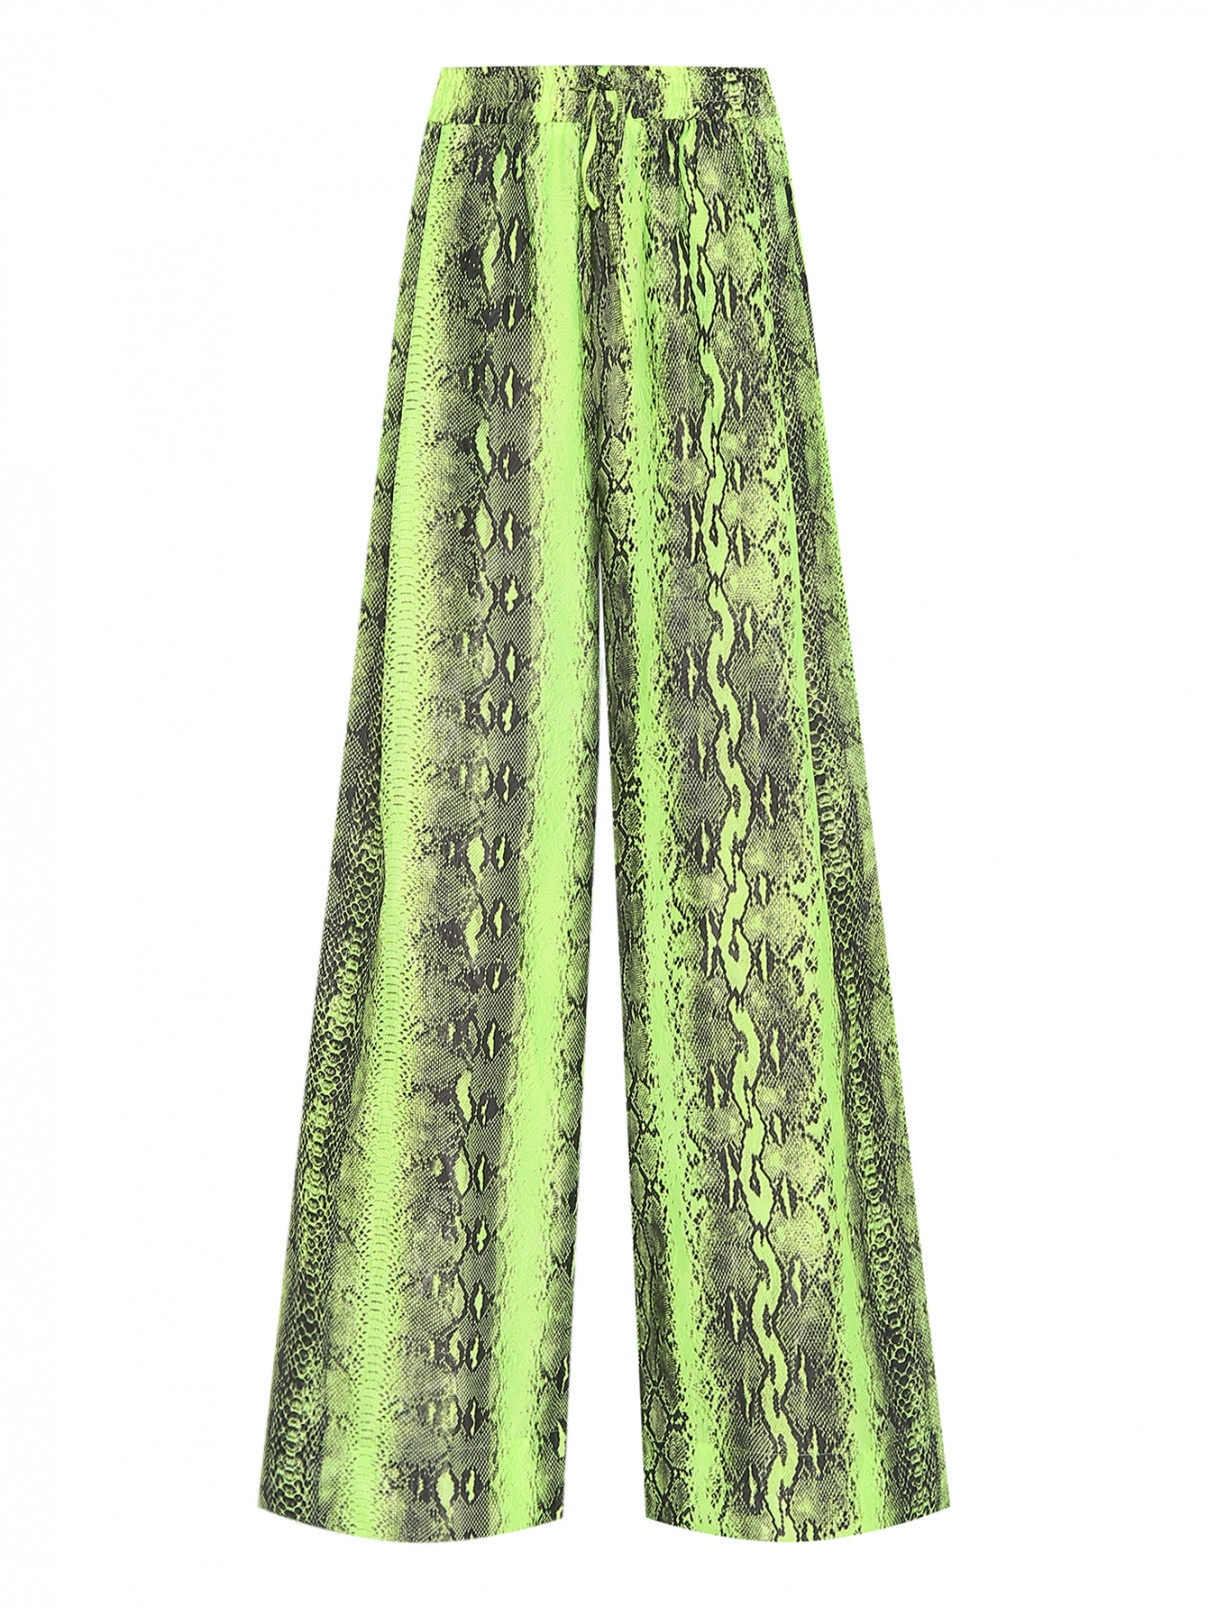 Широкие брюки с узором под змею Essentiel Antwerp  –  Общий вид  – Цвет:  Зеленый